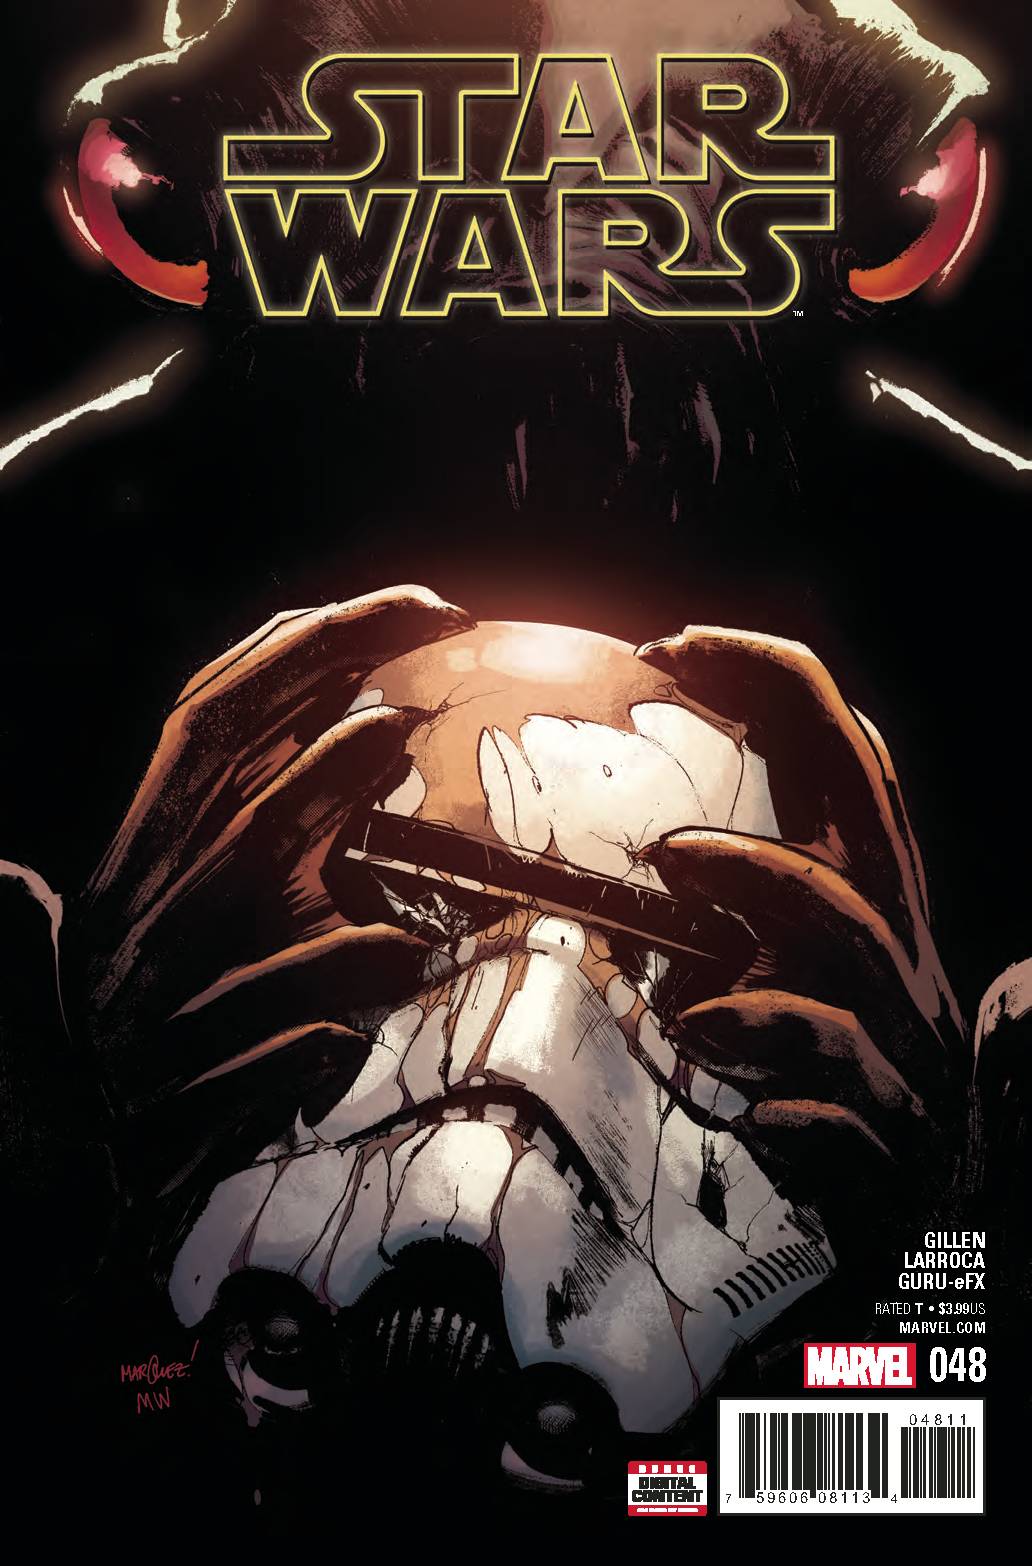 STAR WARS #48 Kieron Gillen David Marquez (05/23/2018) Marvel